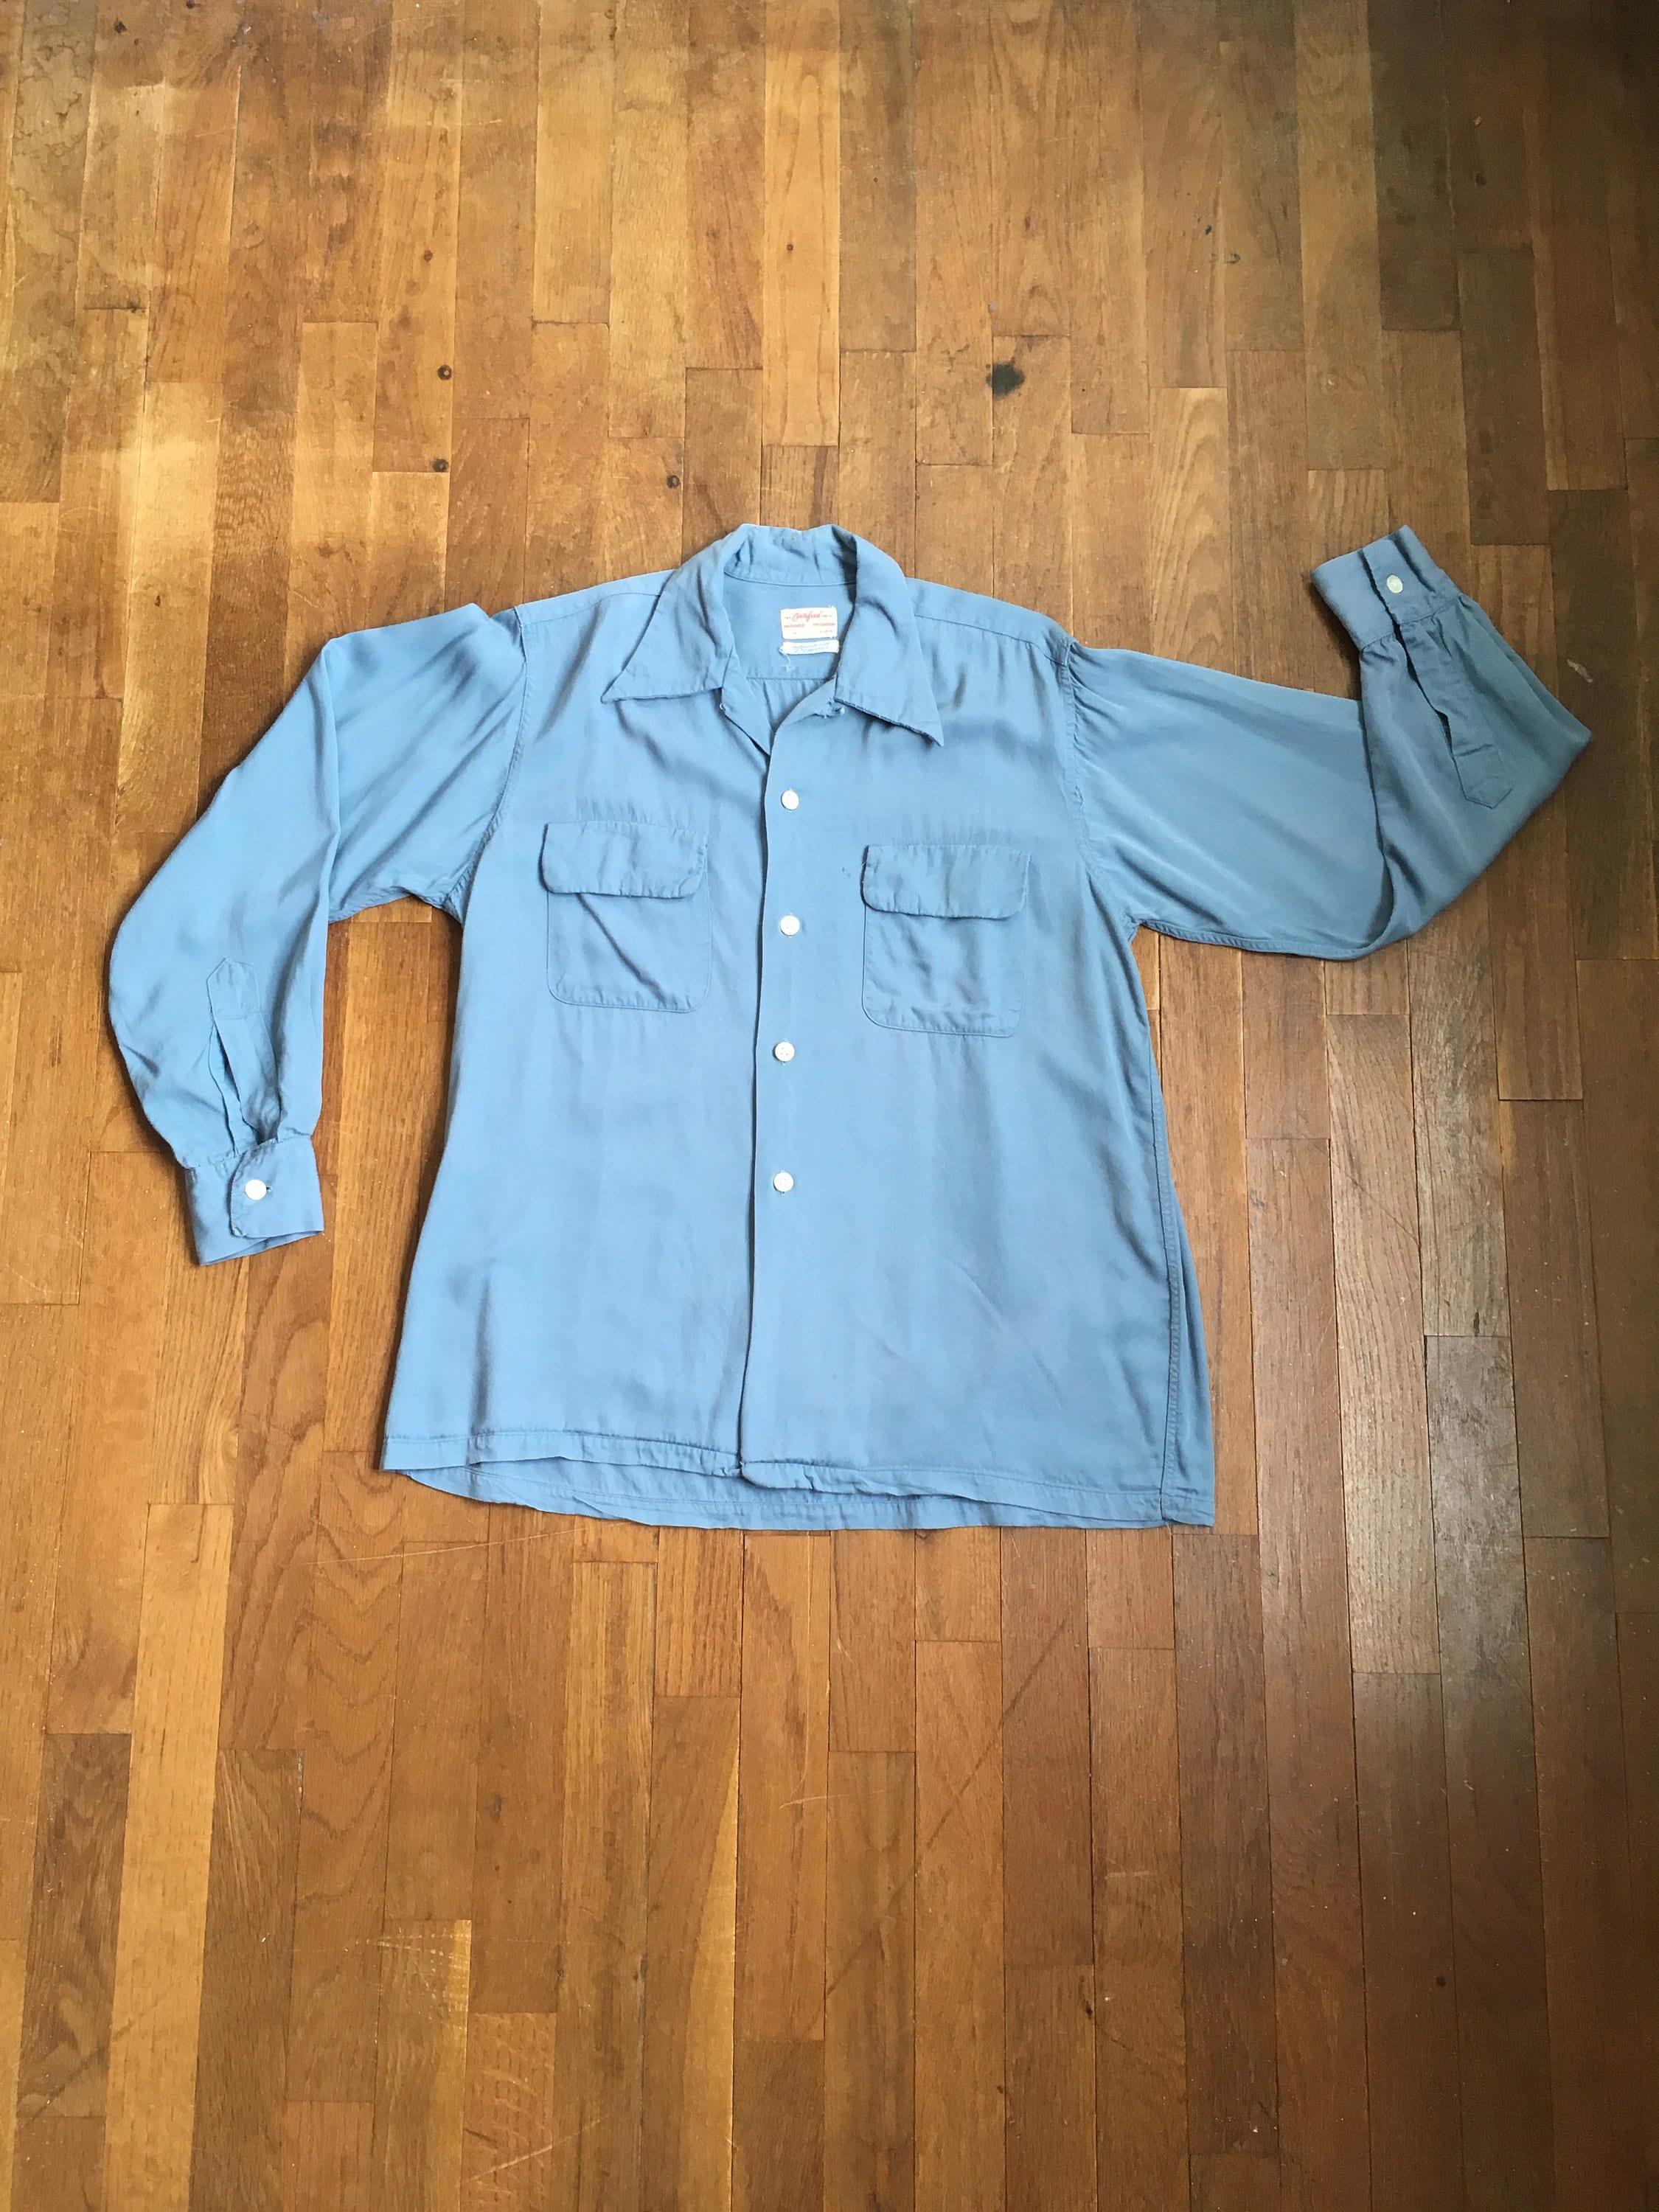 Ropa Ropa para hombre Camisas y camisetas Camisas Oxford y abotonadas Vintage camiseta para hombre camisa de los 90 camisa azul patrón abstracto blusa geométrica ropa masculina vintage ropa de los 90 camisa impresa 